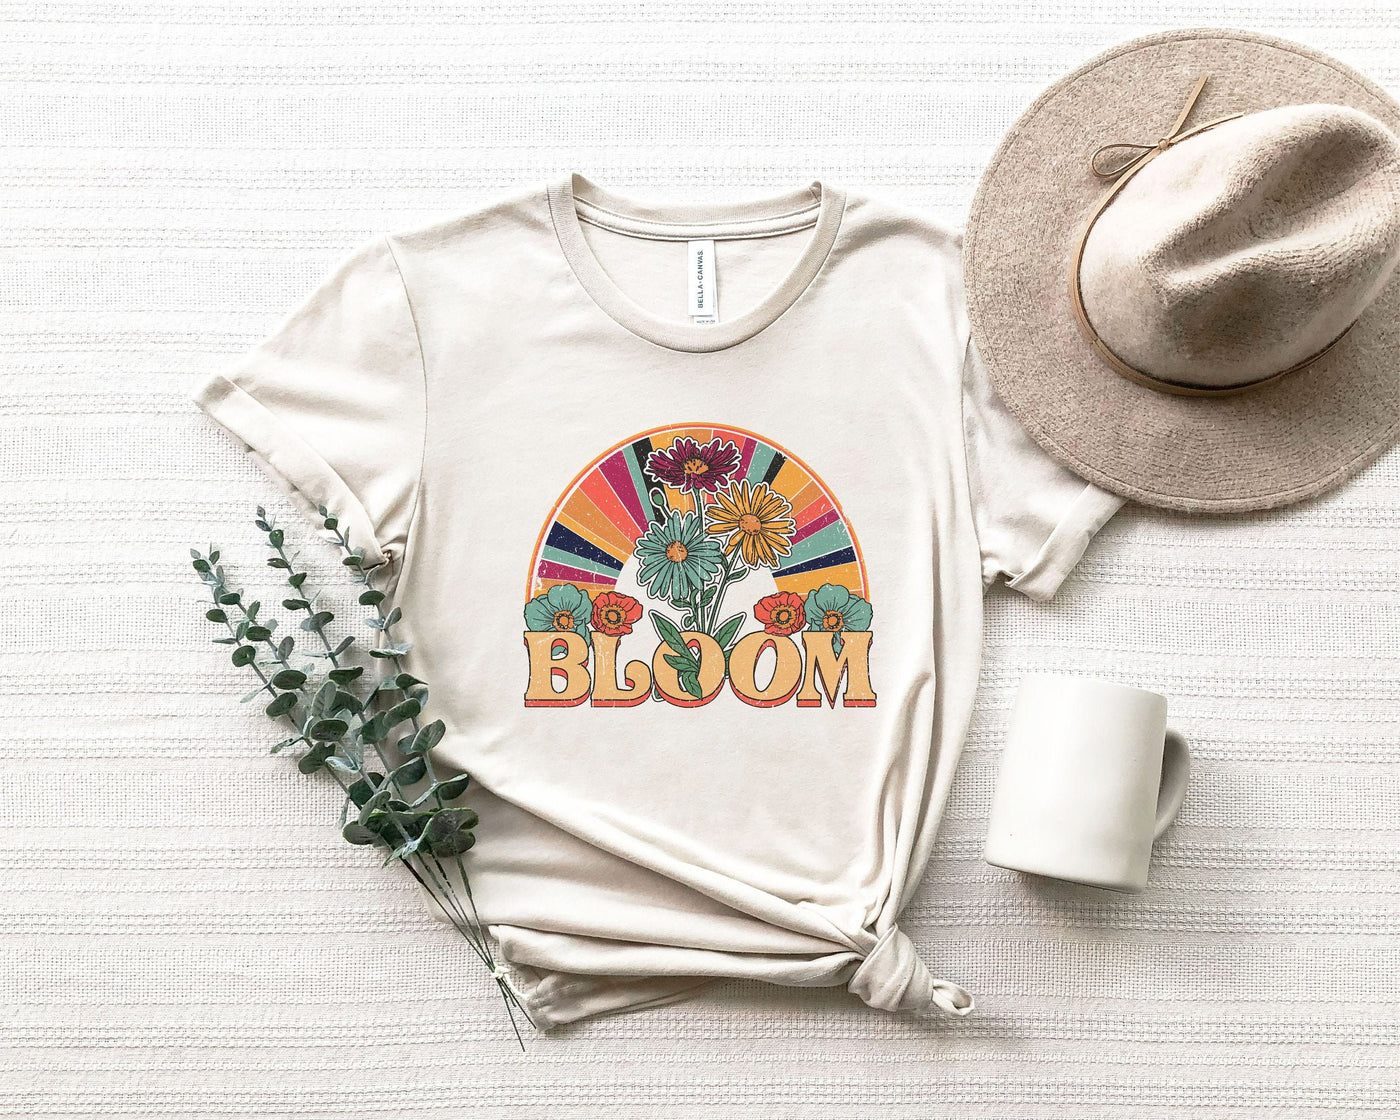 Flower Shirt, Flower Child Shirt, Hippie Shirt, Flower Power Shirt, Spiritual Shirt, Meditation Shirt, Spiritual Gift, Women's Shirt, Retro